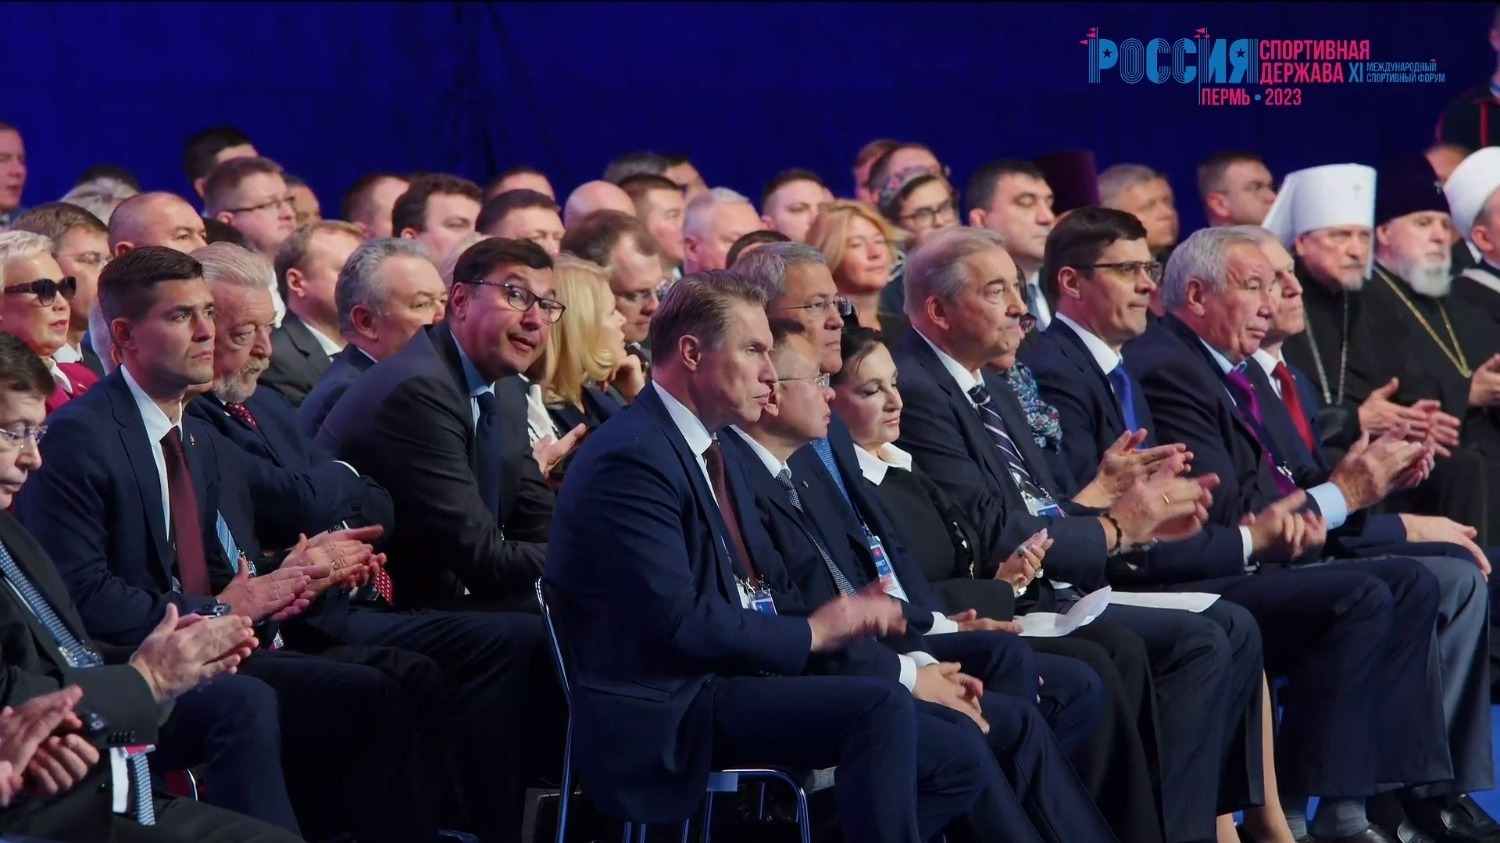 Владимир Путин пригласил спортсменов мира в Уфу  для участия  в форуме «Россия — спортивная держава»